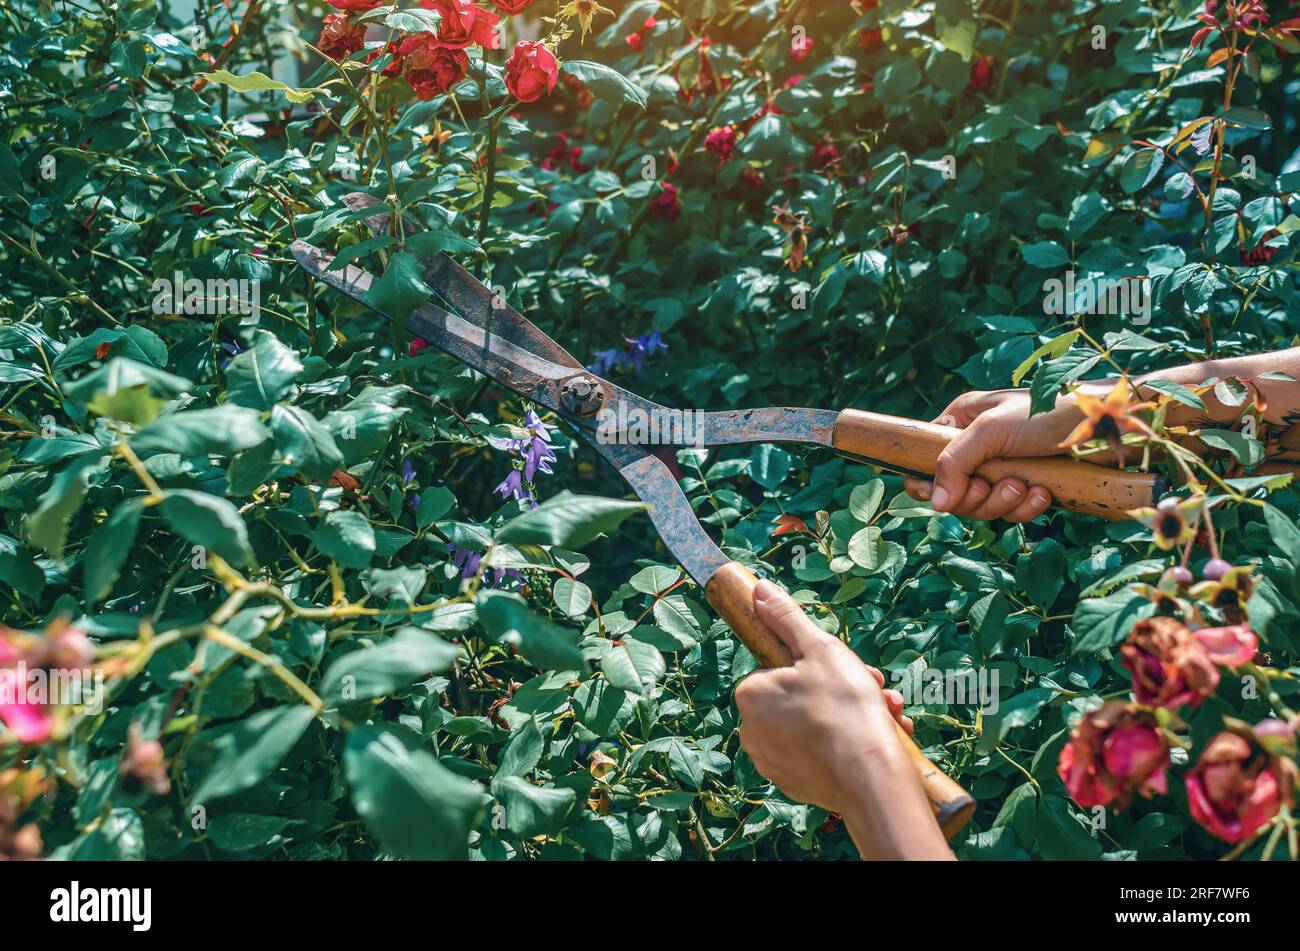 Les mains du jardinier sont taillées avec des cisailles spéciales de taille des roses de brousse dans le jardin. Soin des plantes, taille des arbres. Banque D'Images